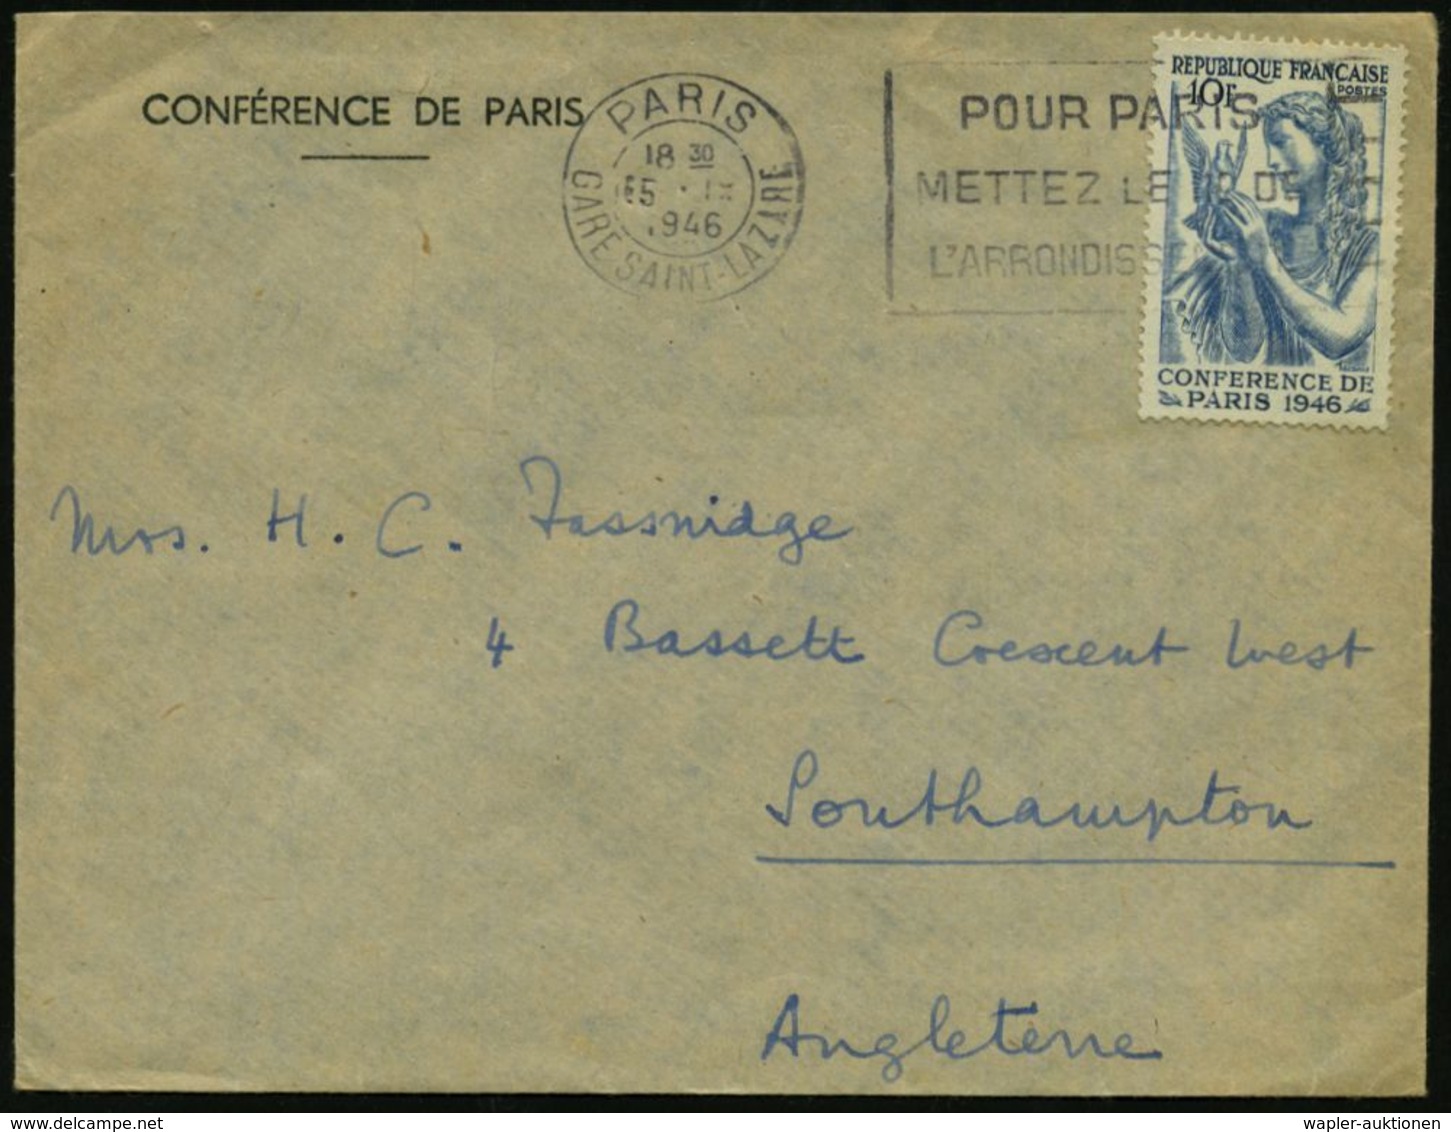 FRANKREICH 1946 (15.9.) 10 F. Friedenskonferenz, EF (Frau Mit Taube) Passender, Amtl. Dienst-Ausl.-Bf.: CONFERENCE DE PA - UNO